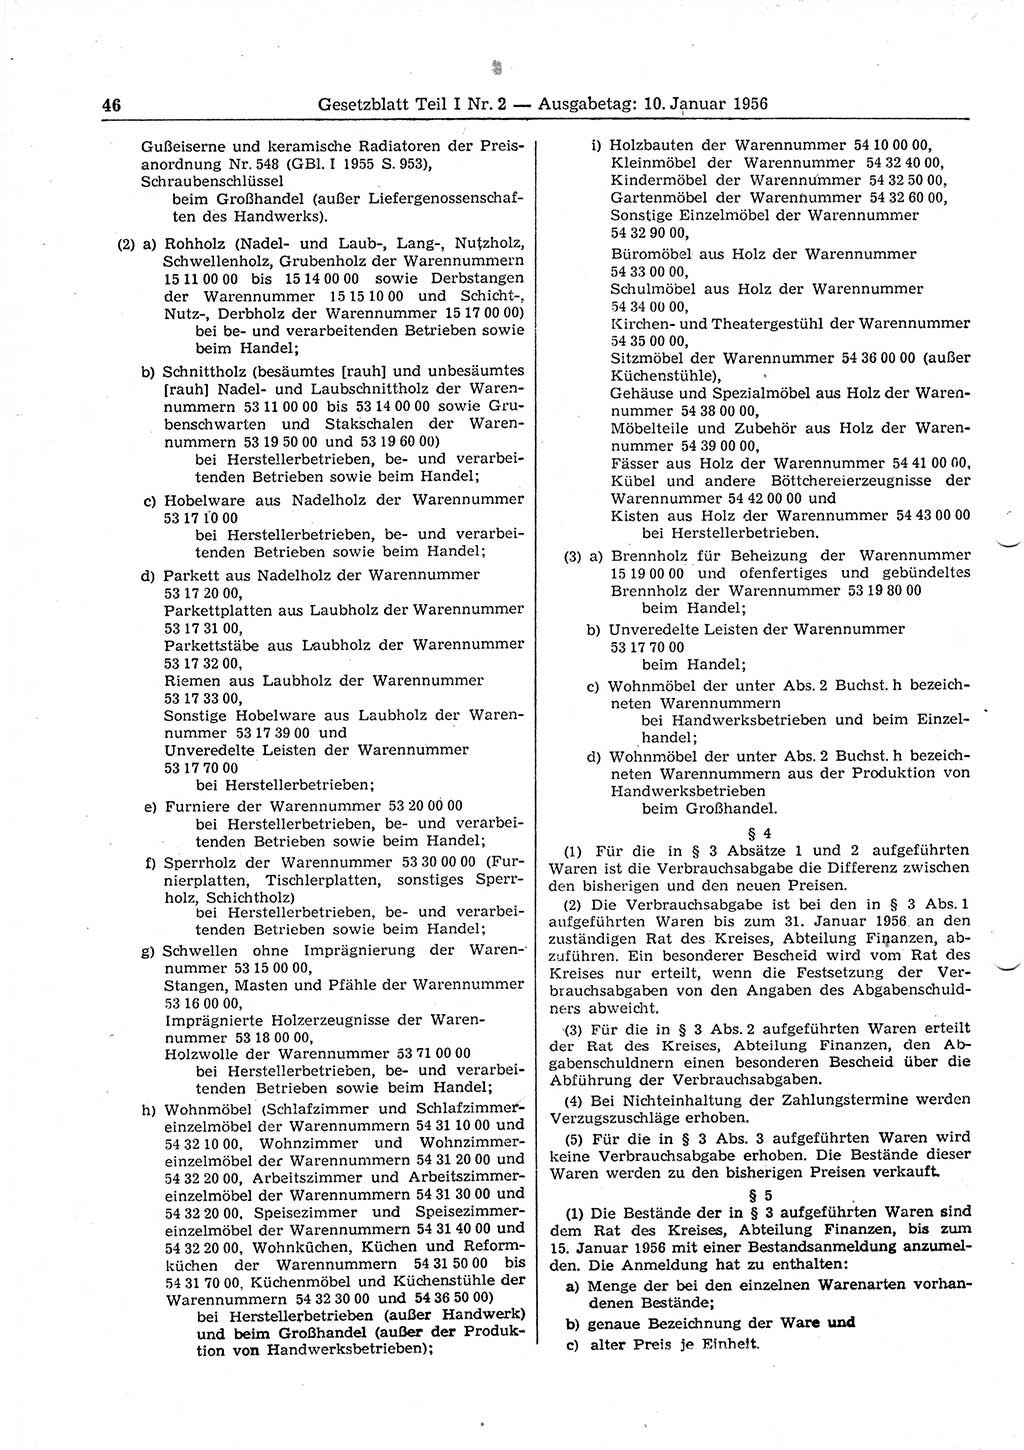 Gesetzblatt (GBl.) der Deutschen Demokratischen Republik (DDR) Teil Ⅰ 1956, Seite 46 (GBl. DDR Ⅰ 1956, S. 46)